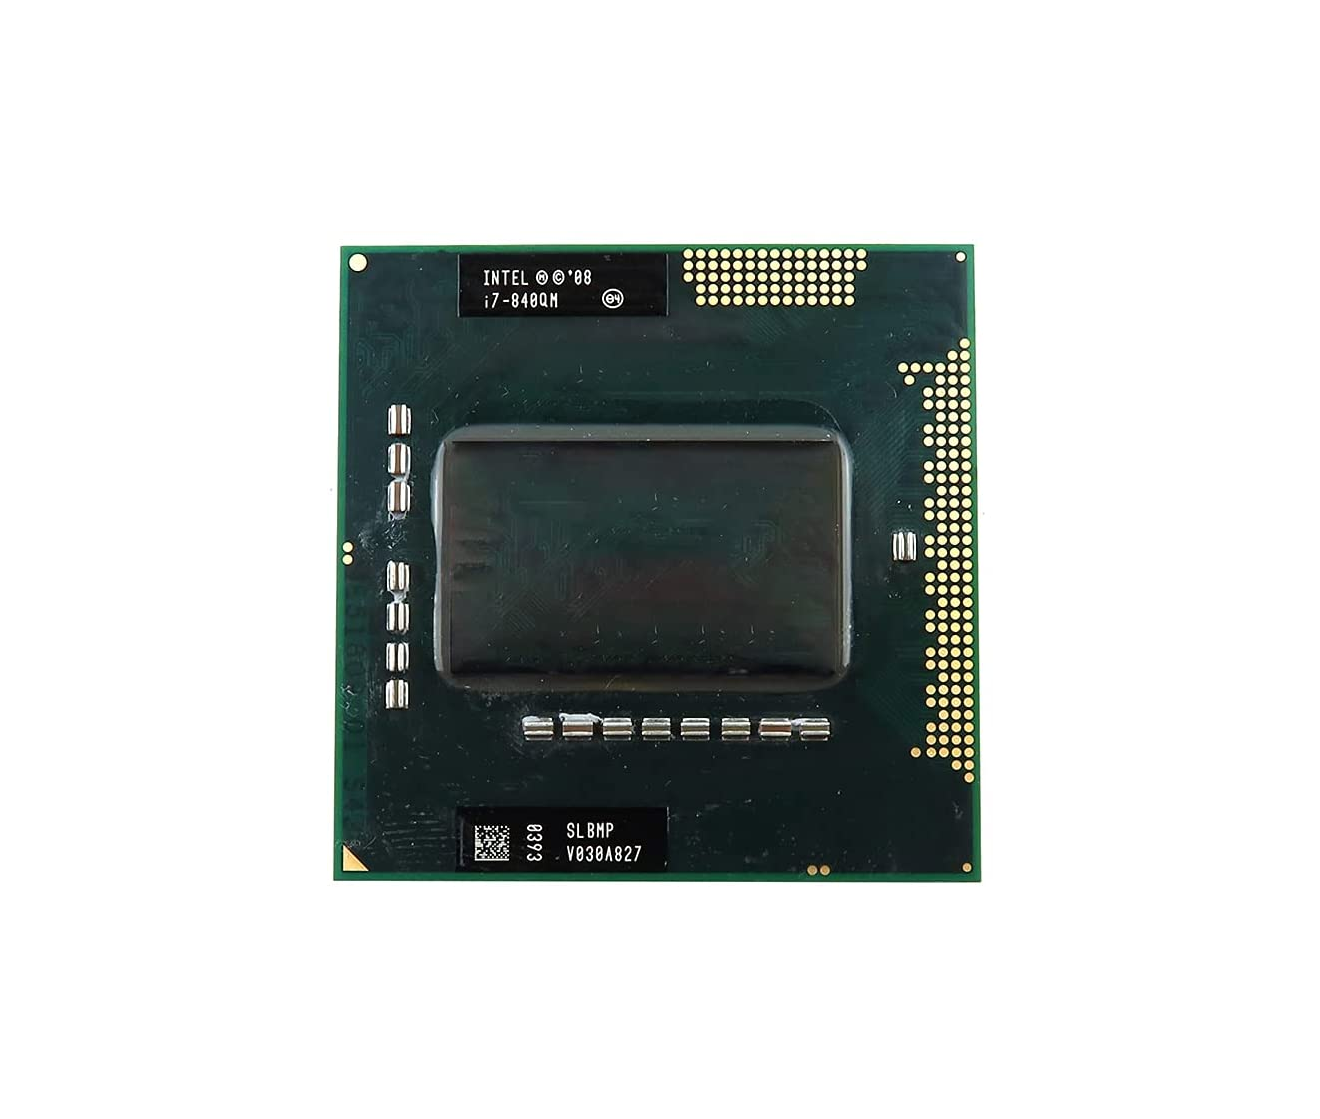 Dell 4PN5M 1.86GHz 2.5GT/s DMI 8MB SmartCache Socket FCPGA988 Intel Core i7-840QM Quad Core Notebook Processor